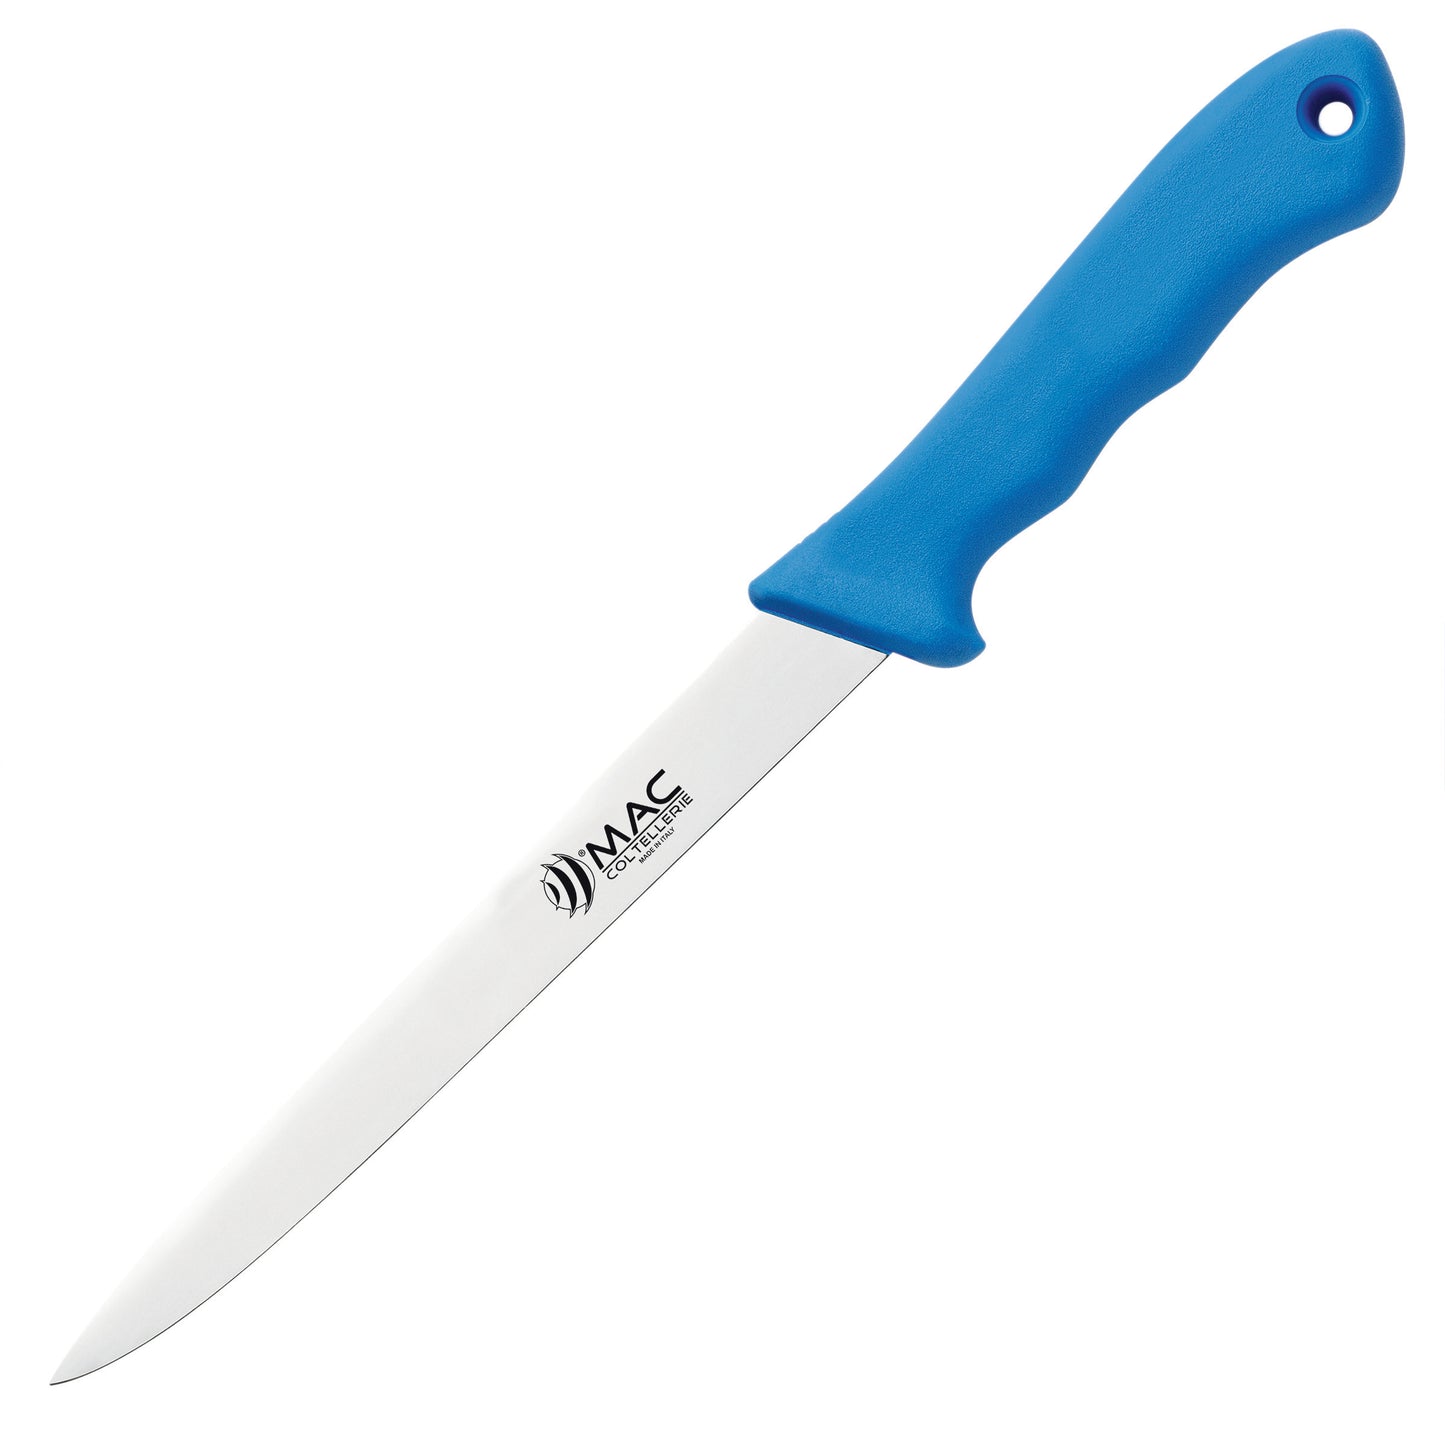 MAC D300 C fillet knife